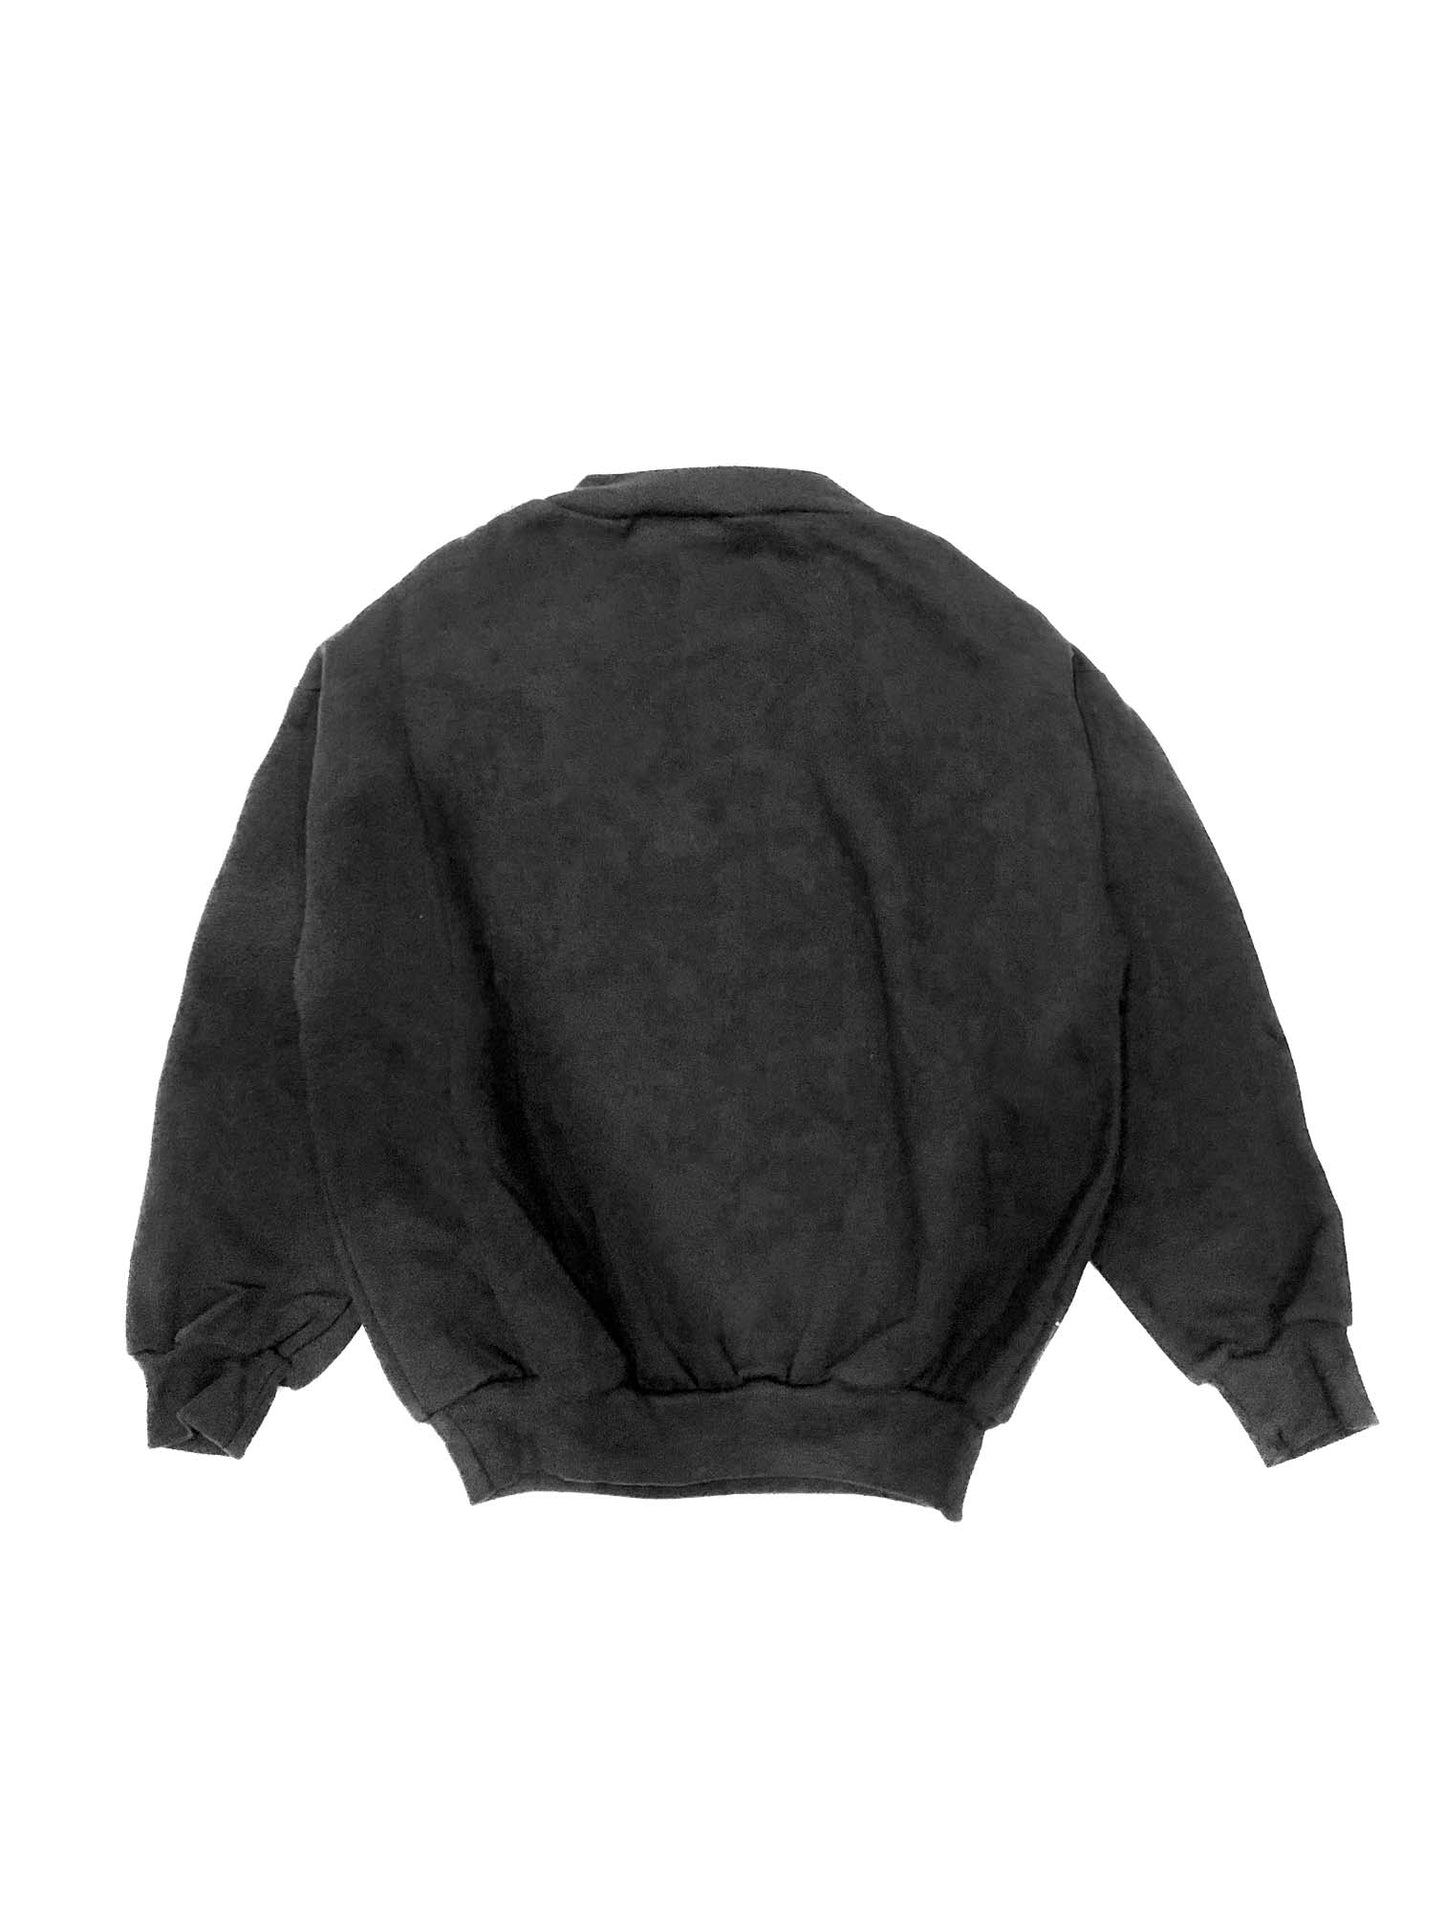 Sweat-shirt noir unisexe pour enfants - P à TG